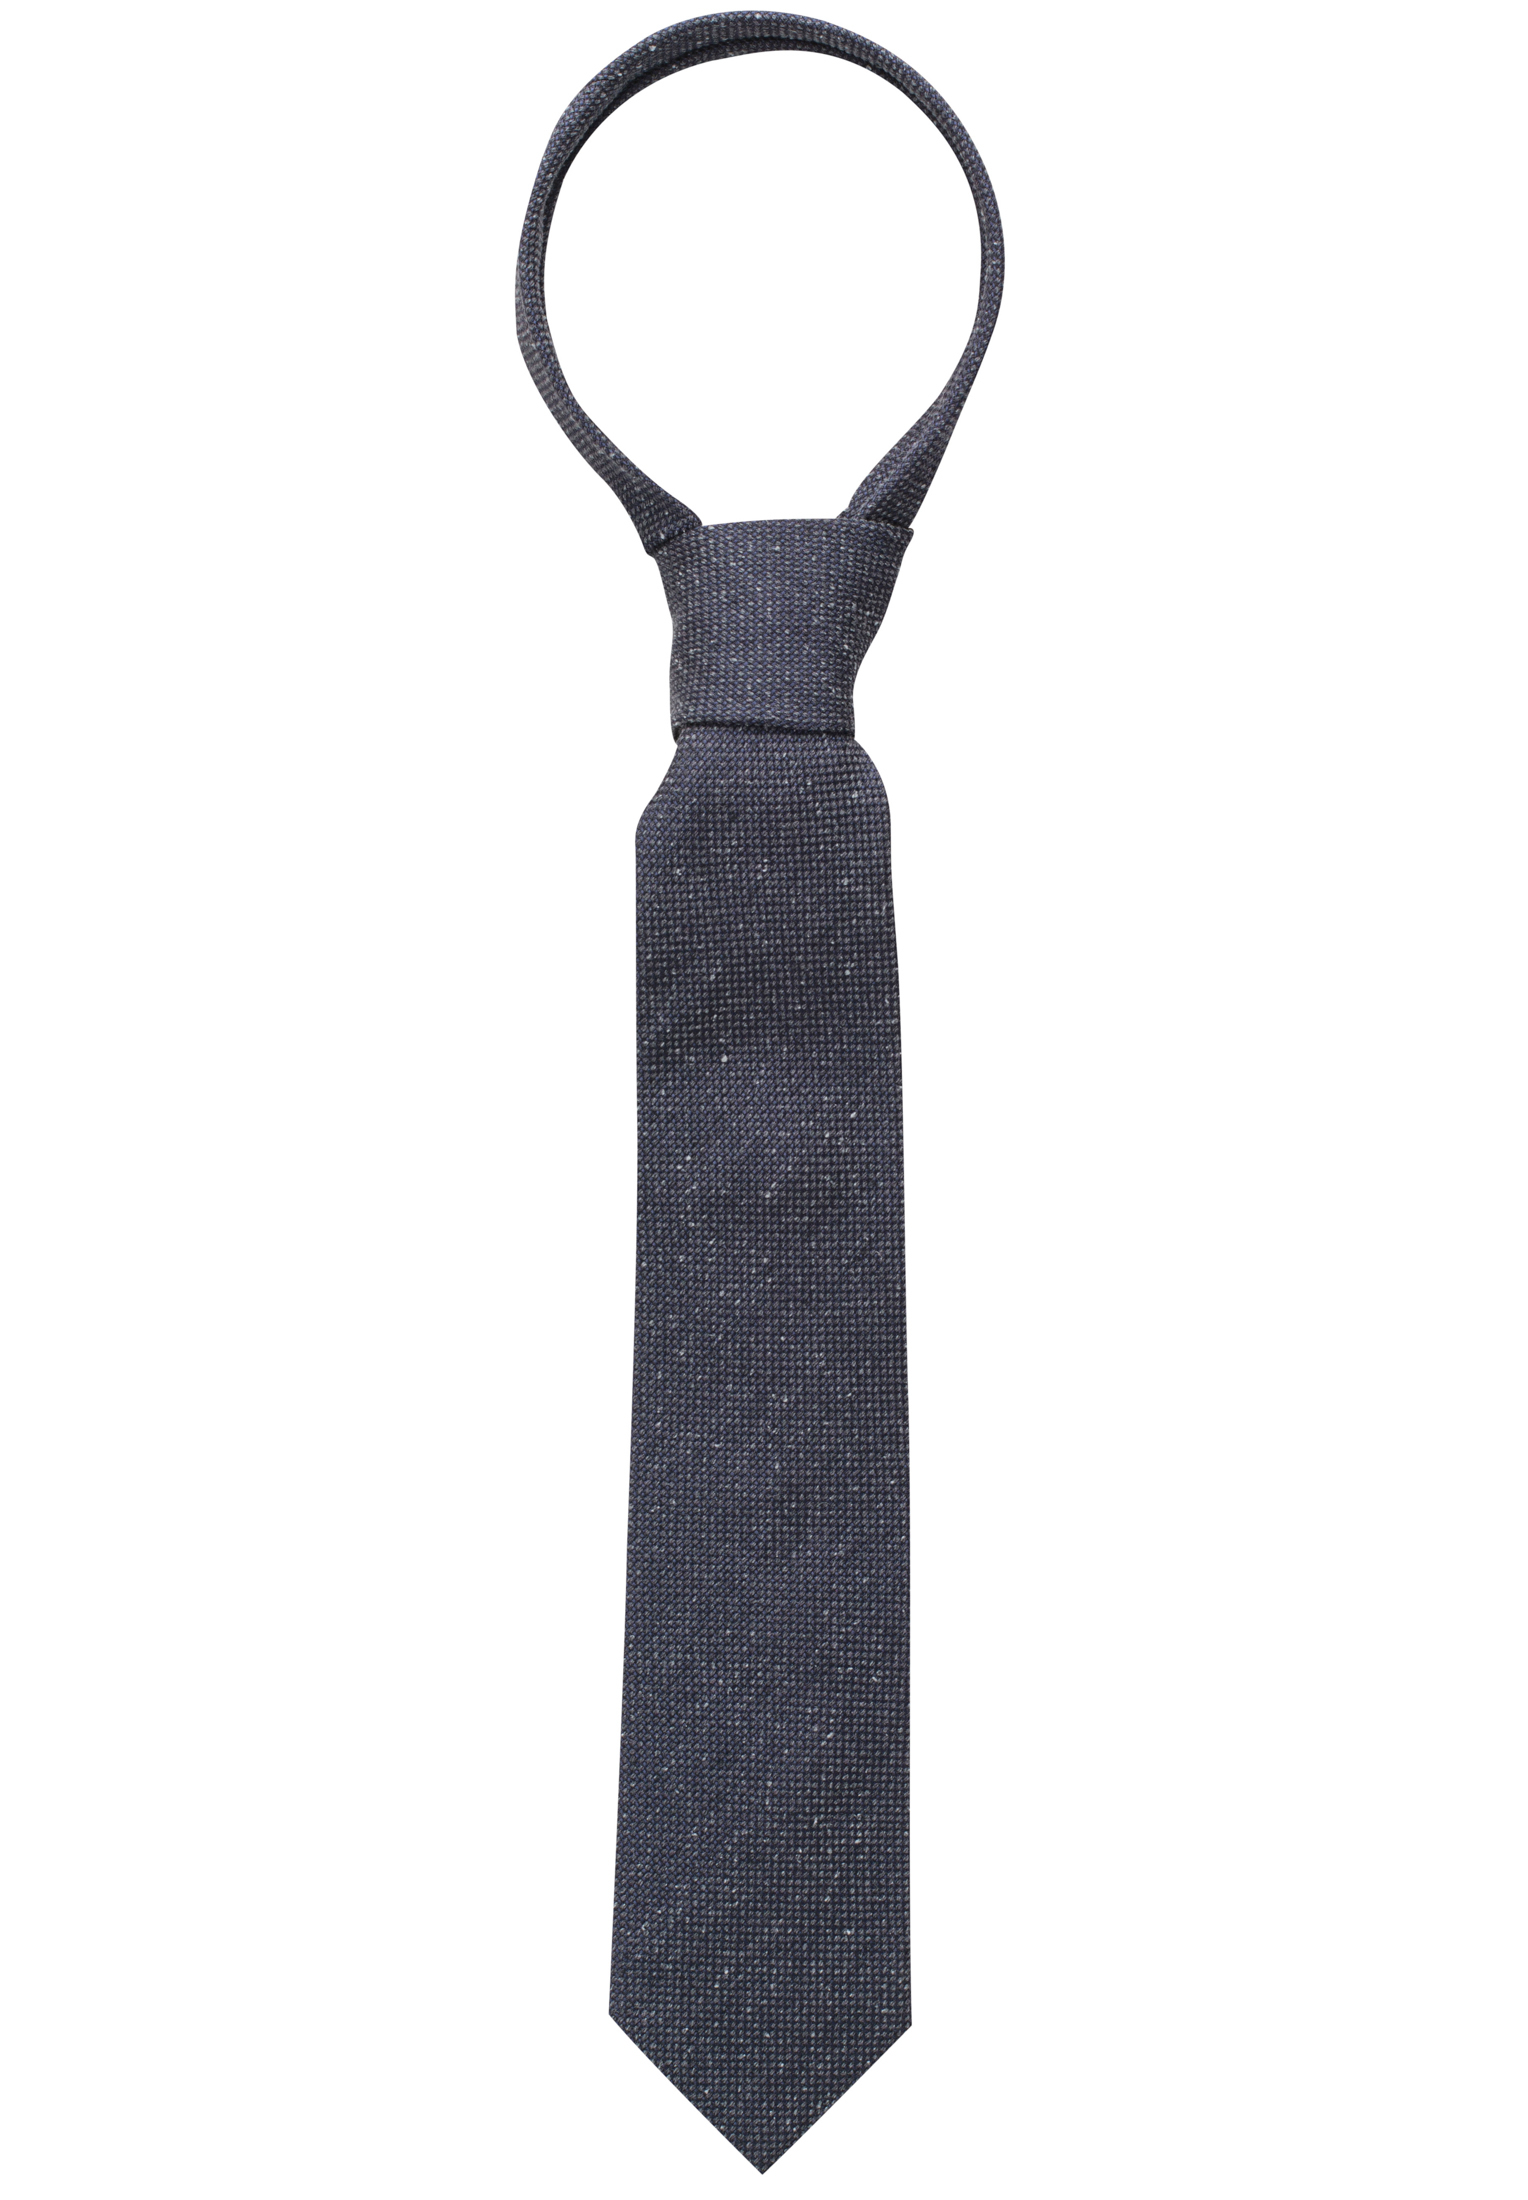 Krawatte in grau unifarben | | 1AC00468-03-01-142 | grau 142